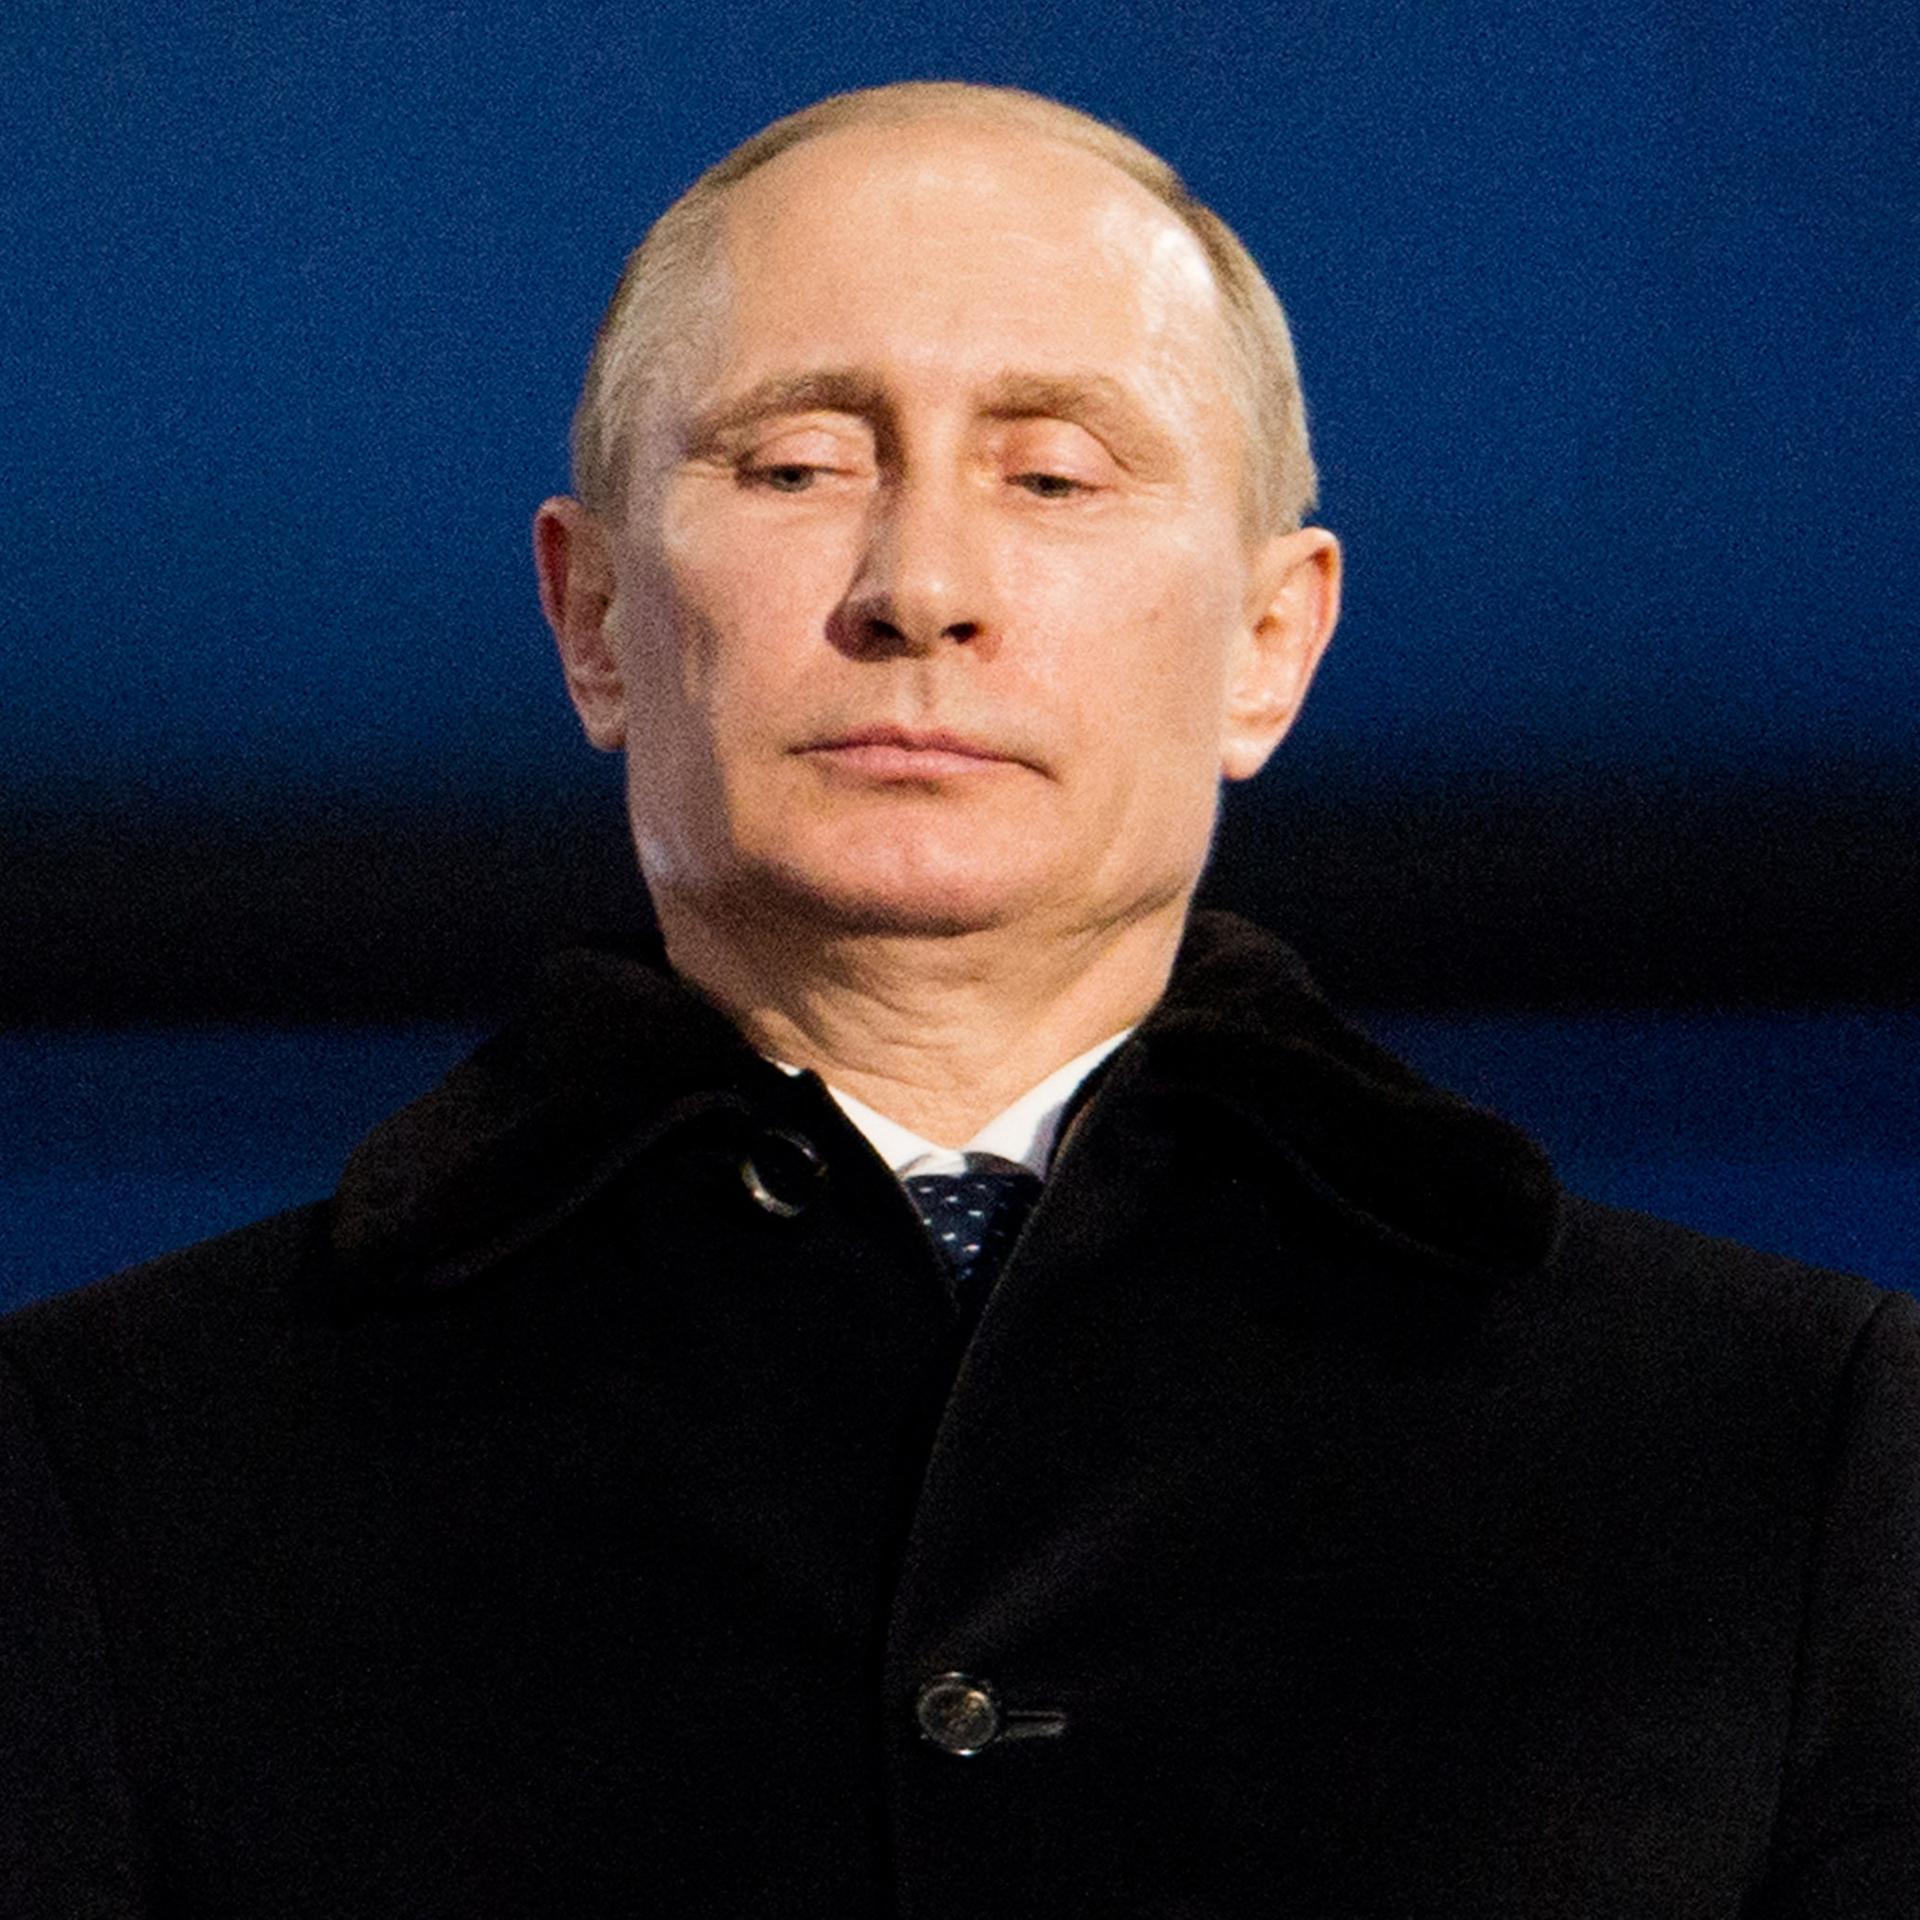 Russland unter Putin - Wunsch und Wirklichkeit in russischen Geschichtsbildern